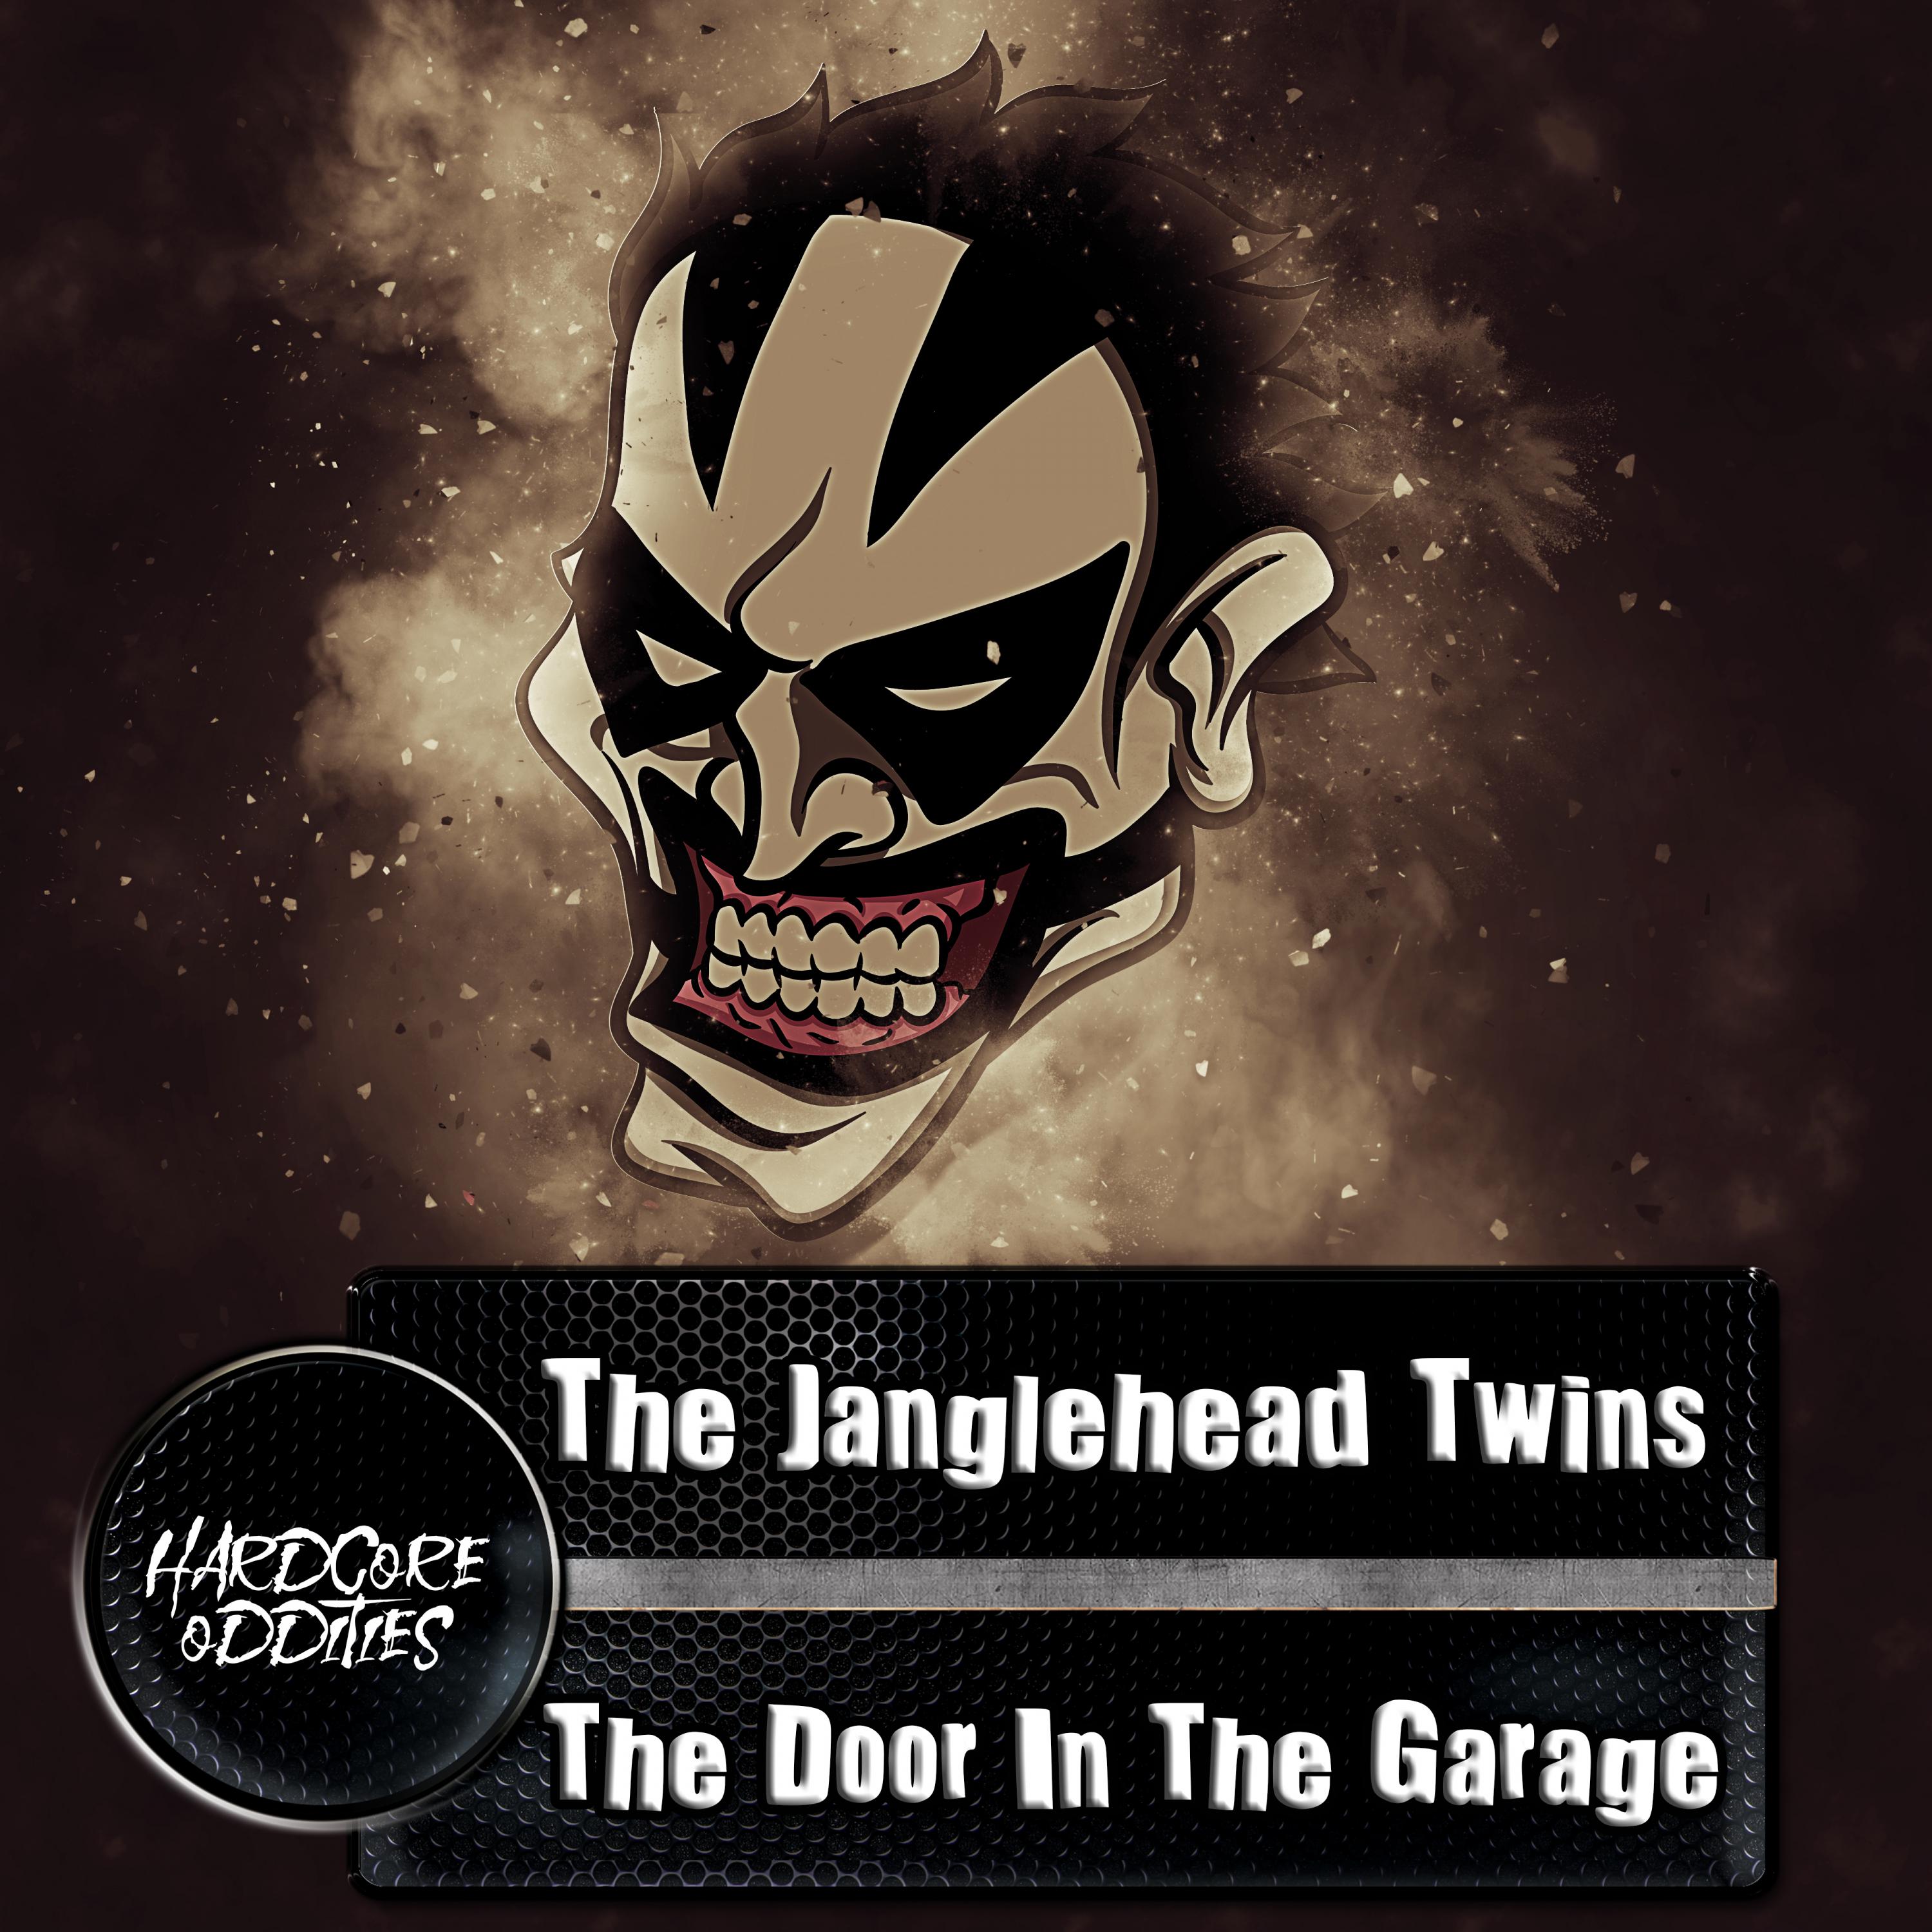 The Door In The Garage歌词 歌手The Janglehead Twins-专辑The Door In The Garage-单曲《The Door In The Garage》LRC歌词下载